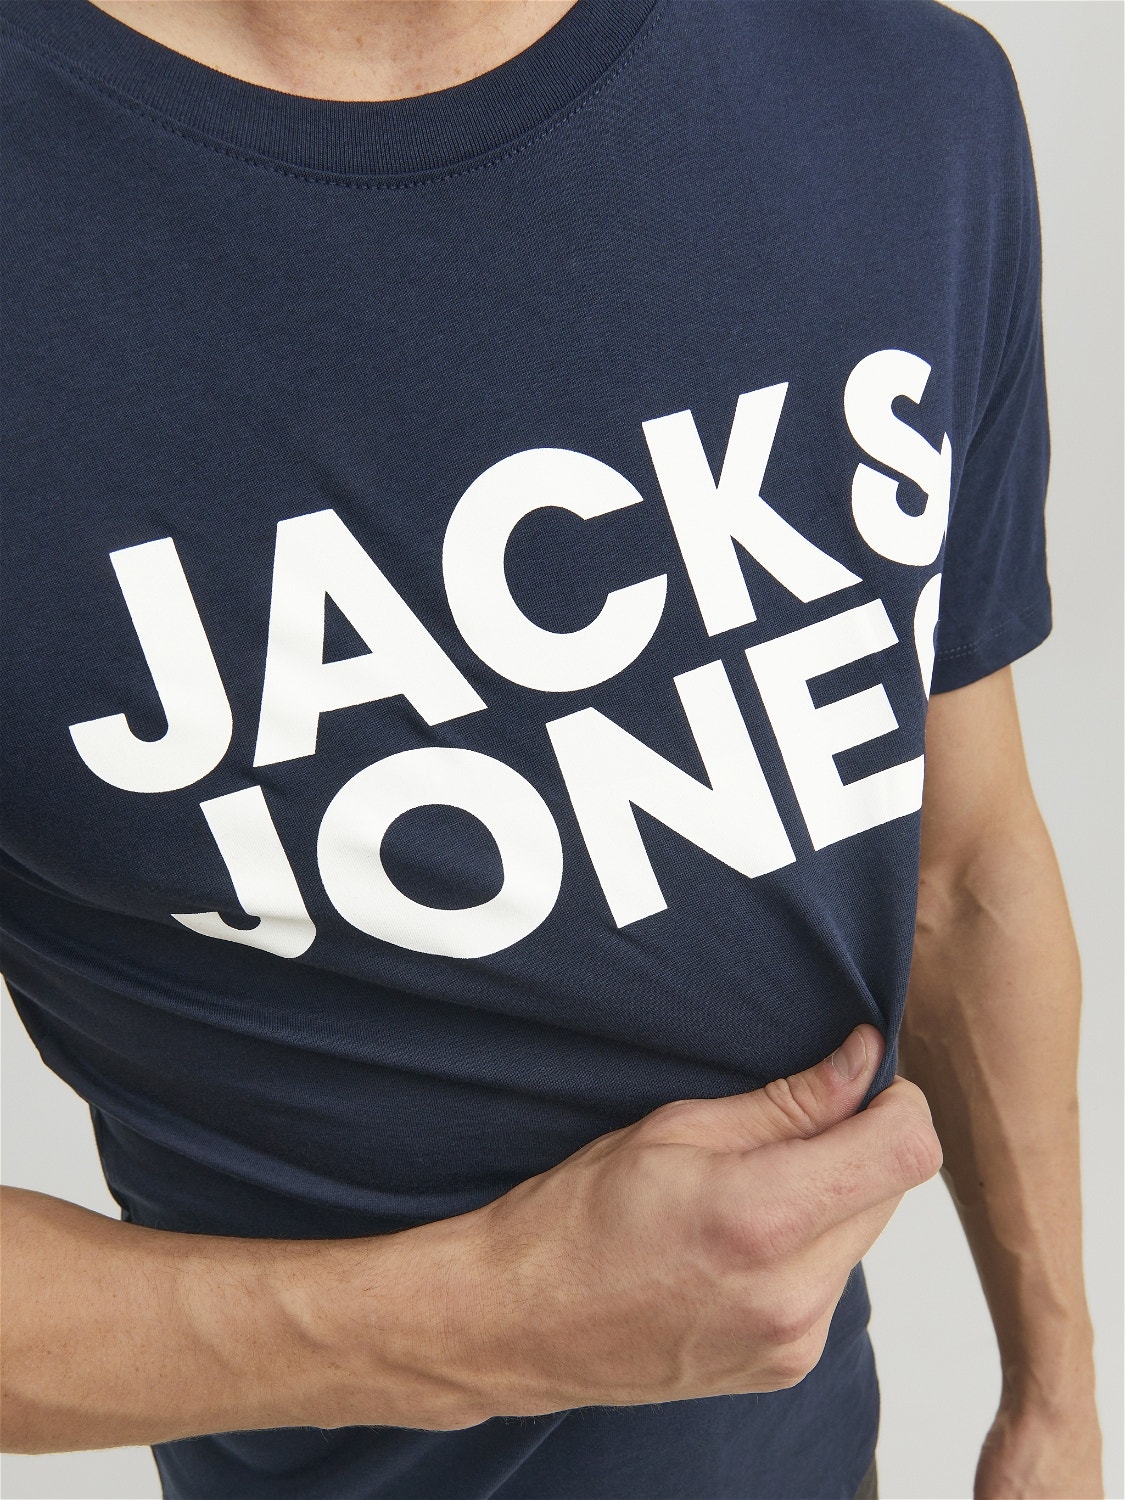 Jack & Jones Logo O-Neck T-shirt -Navy Blazer - 12151955